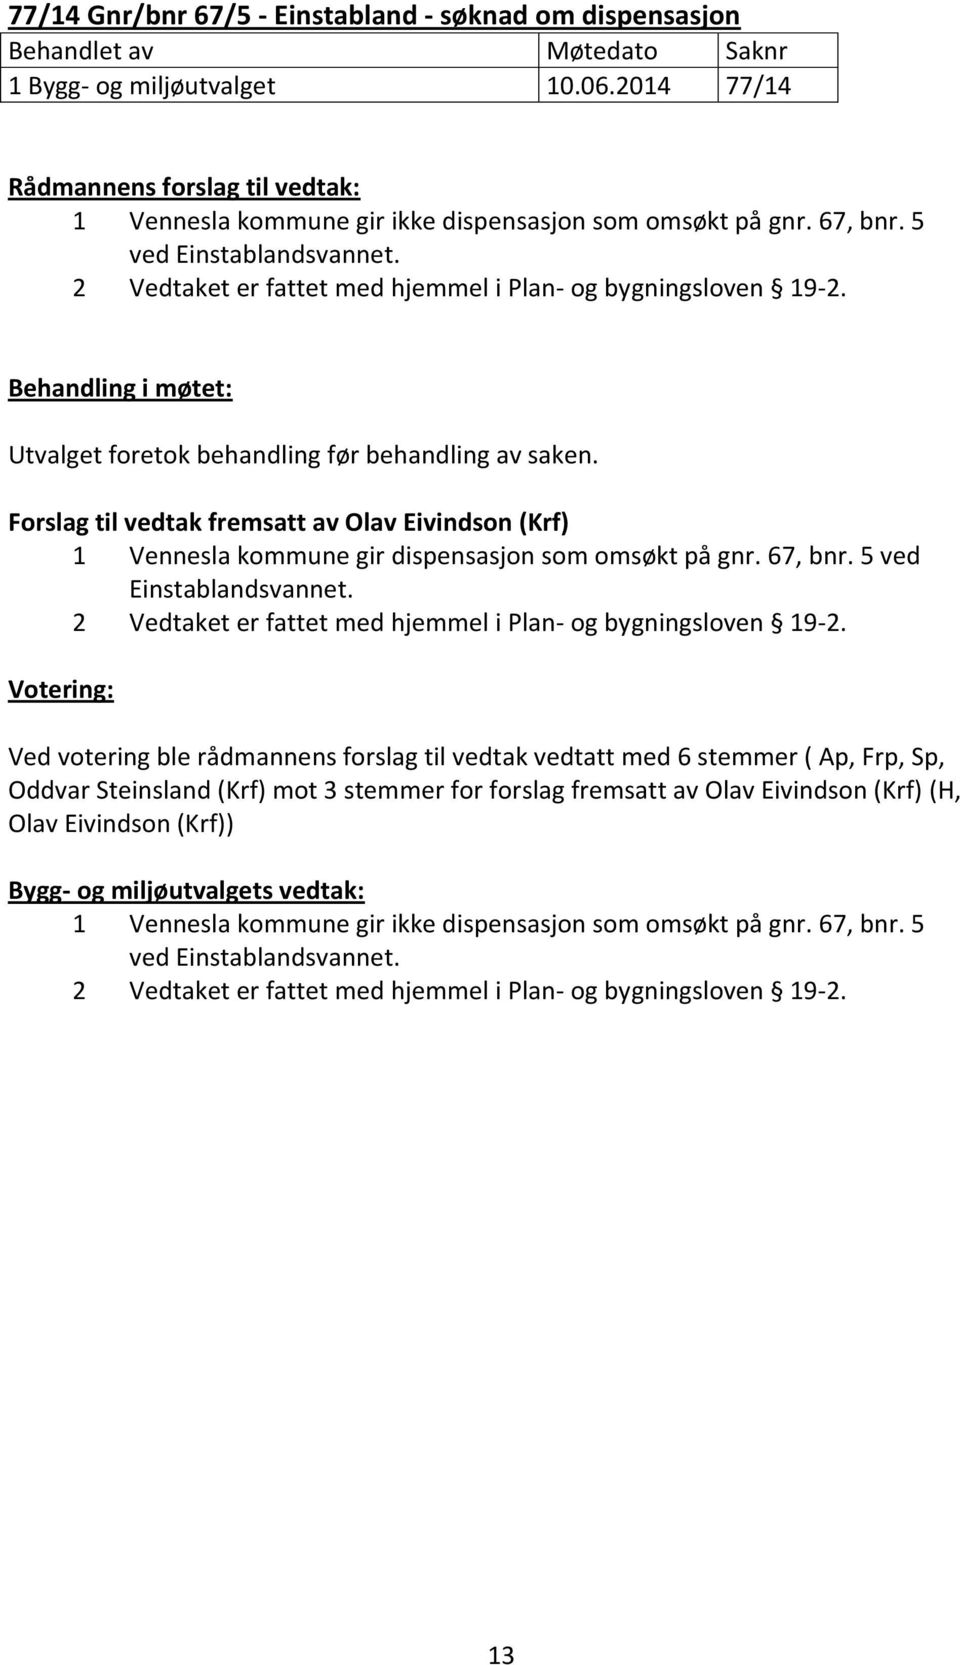 Forslag til vedtak fremsatt av Olav Eivindson (Krf) 1 Vennesla kommune gir dispensasjon som omsøkt på gnr. 67, bnr. 5 ved Einstablandsvannet.